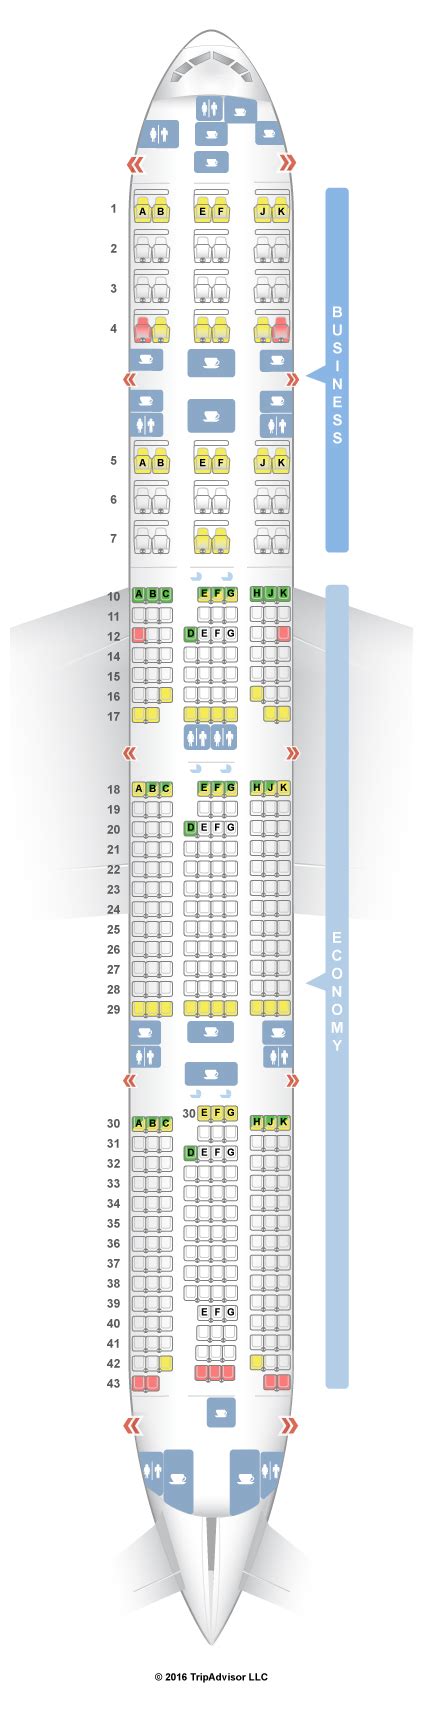 qatar airways seat map usa flights